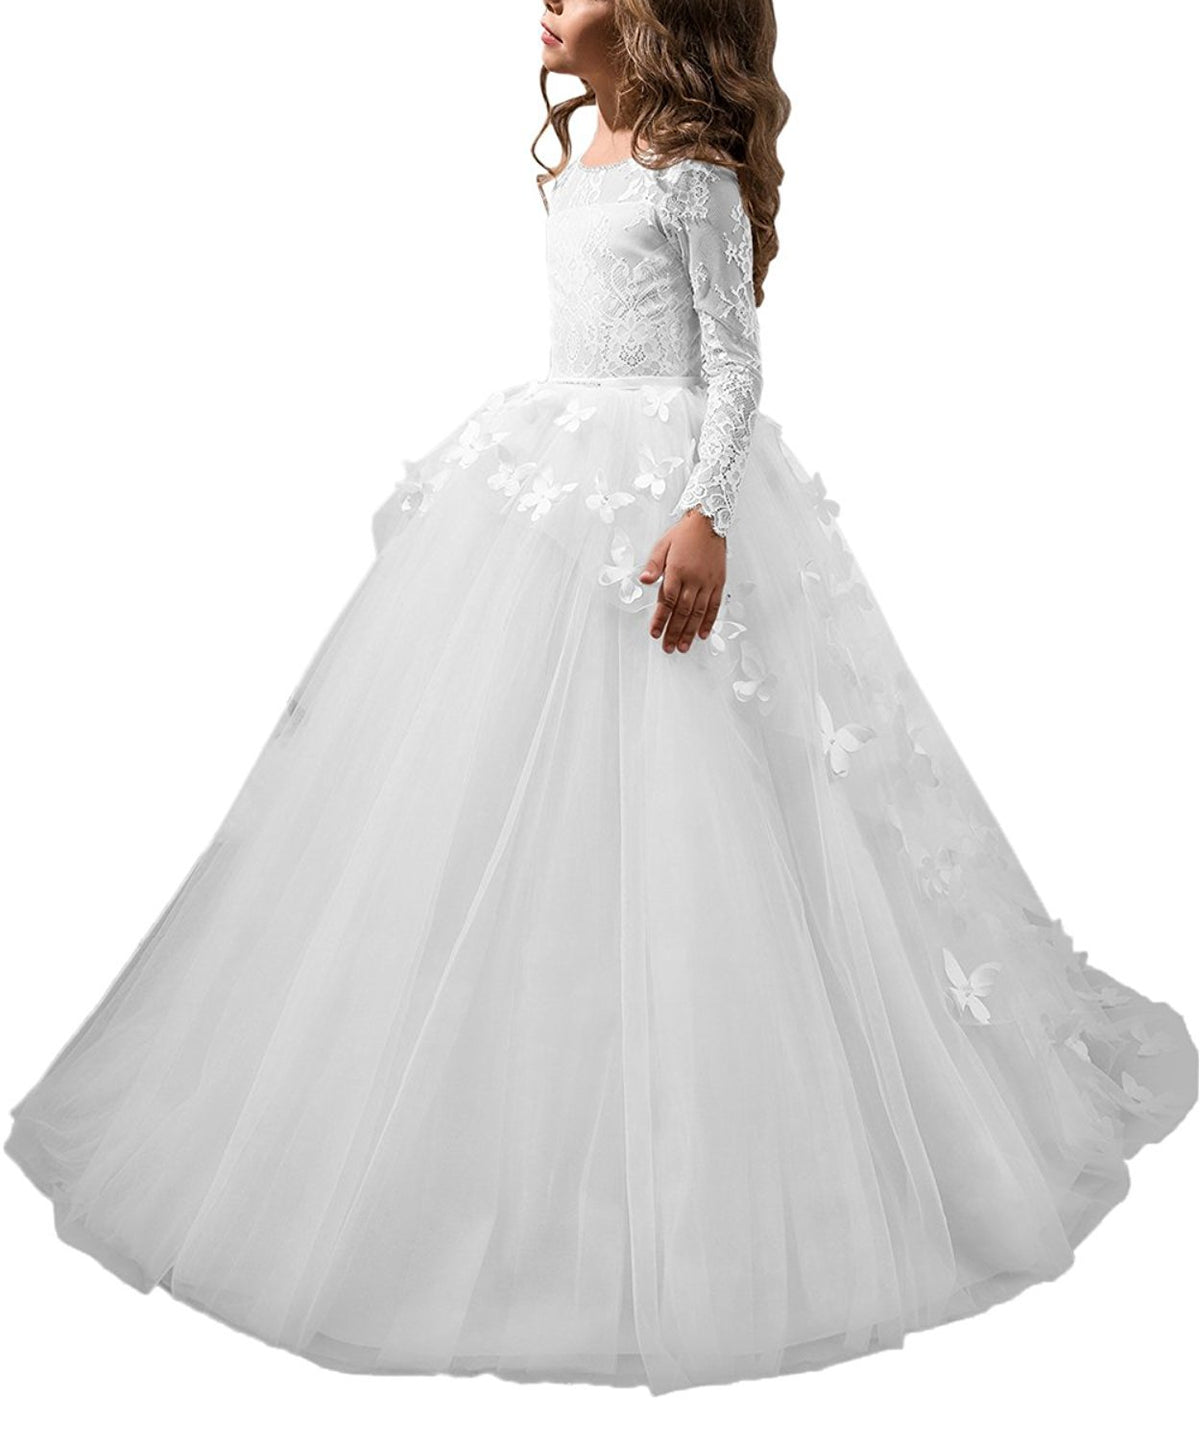 First Communion Dresses  Long Sleeve Butterflies Dresses girls ball gowns princess dresses  Flower Girl Dresses for Wedding